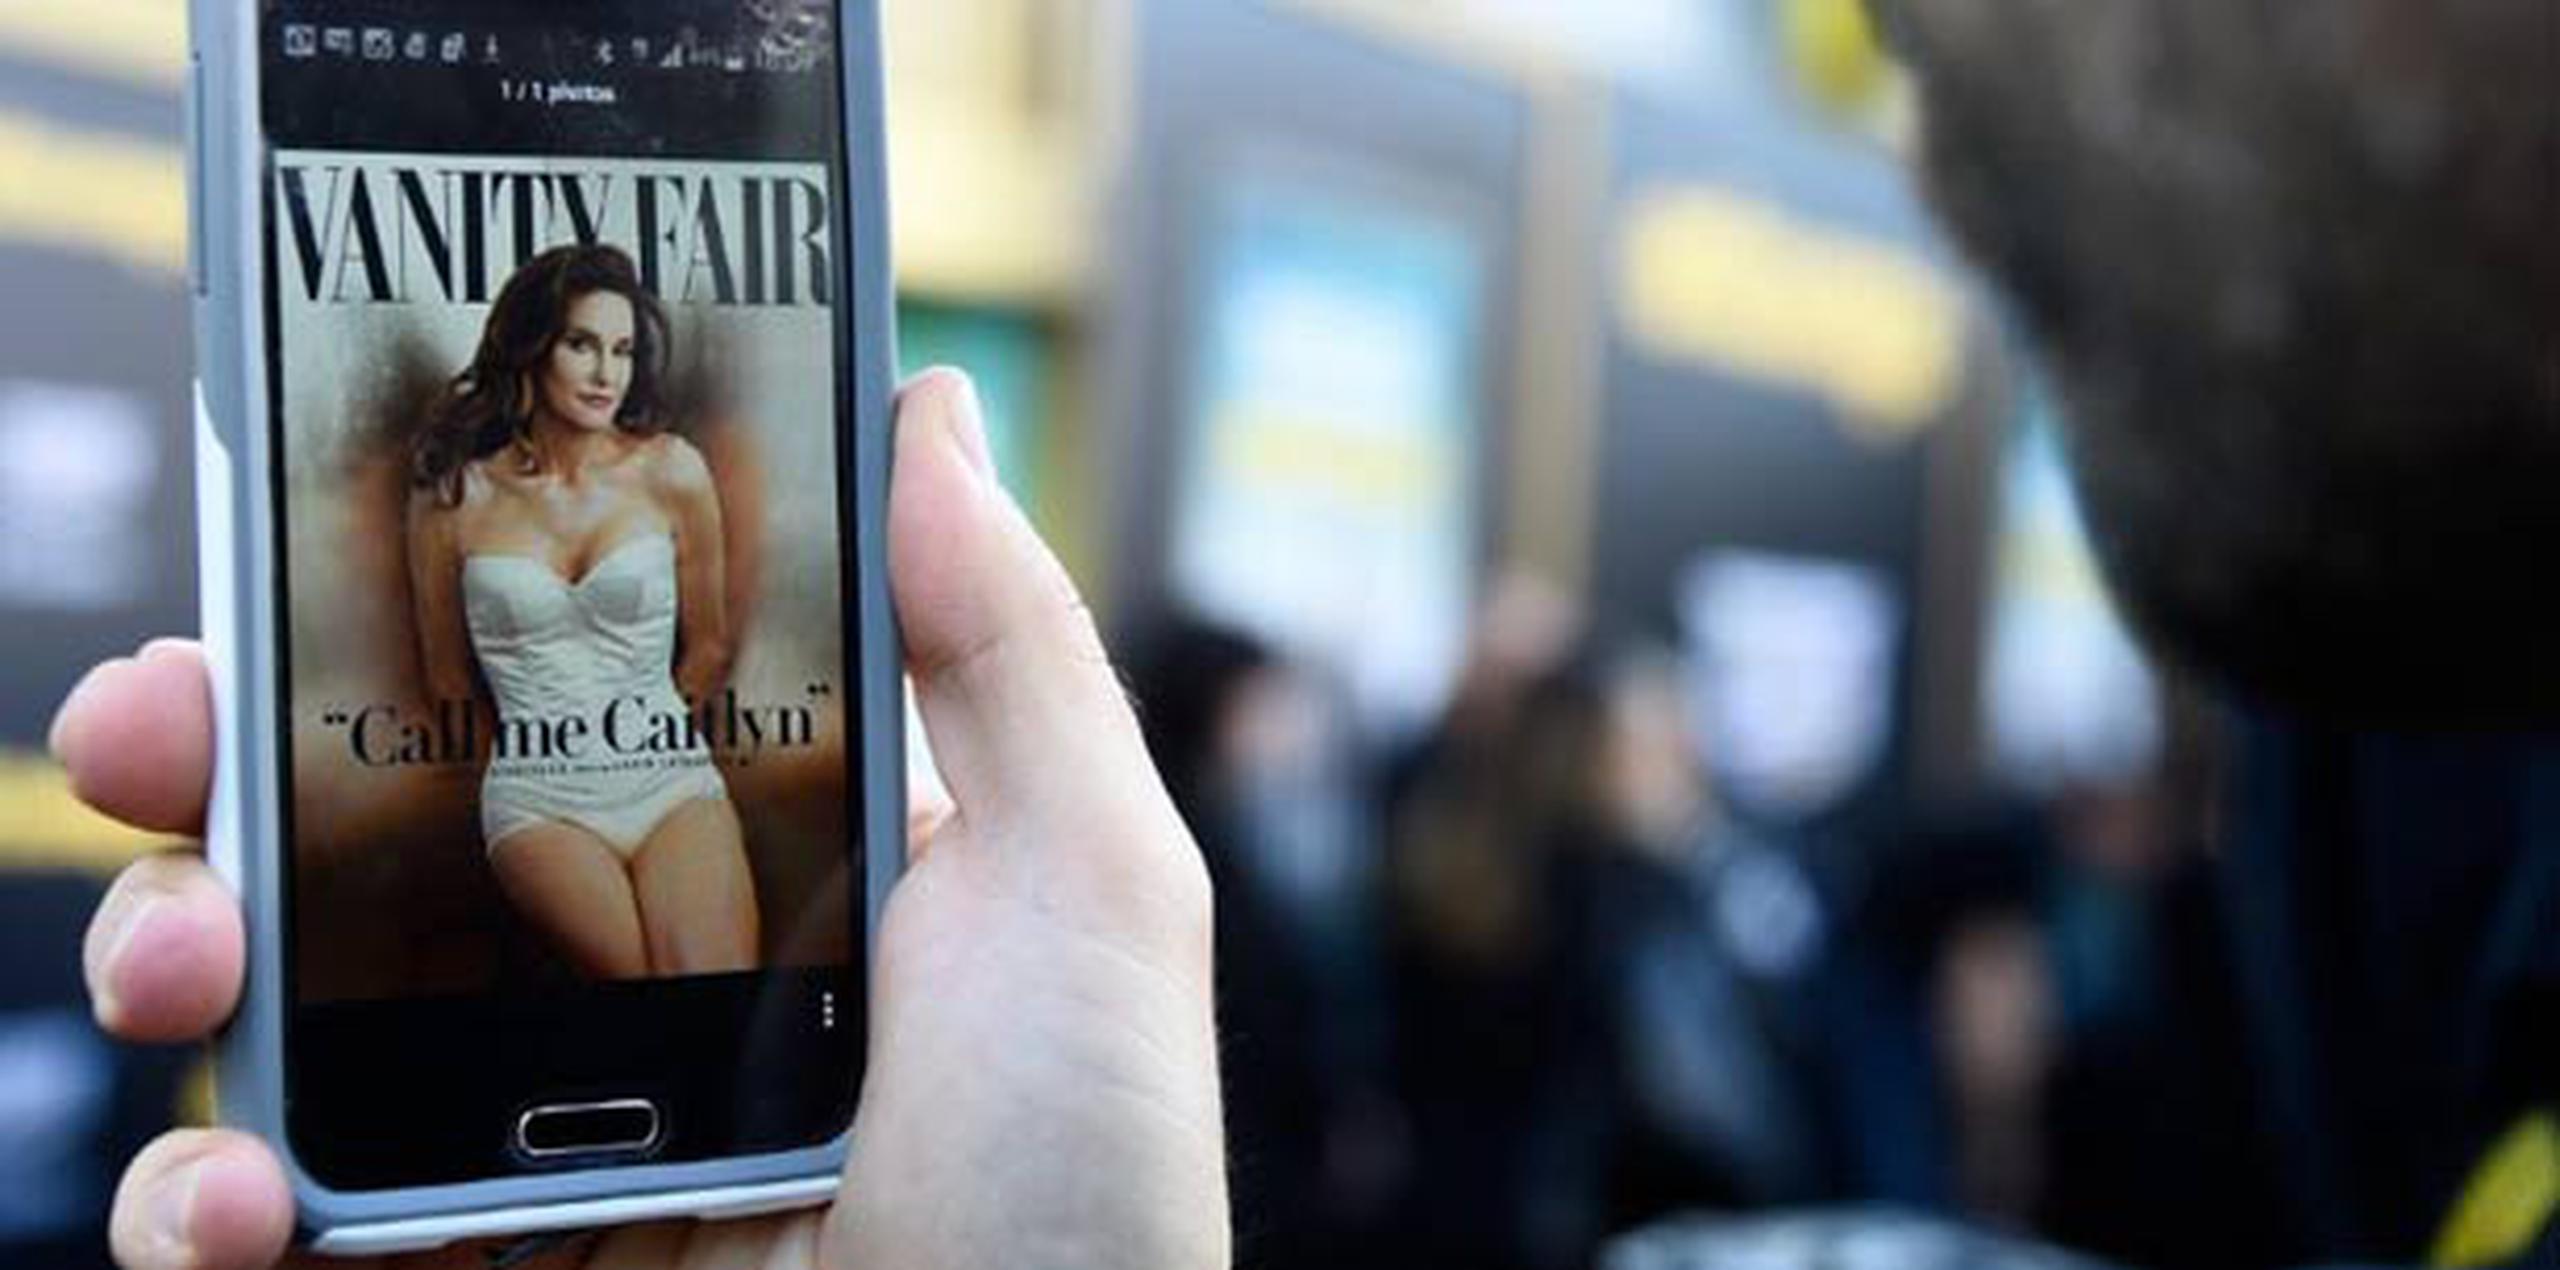 Jenner abrió su cuenta el mismo día que mostró al mundo la portada de la nueva revista “Vanity Fair”. (AFP)